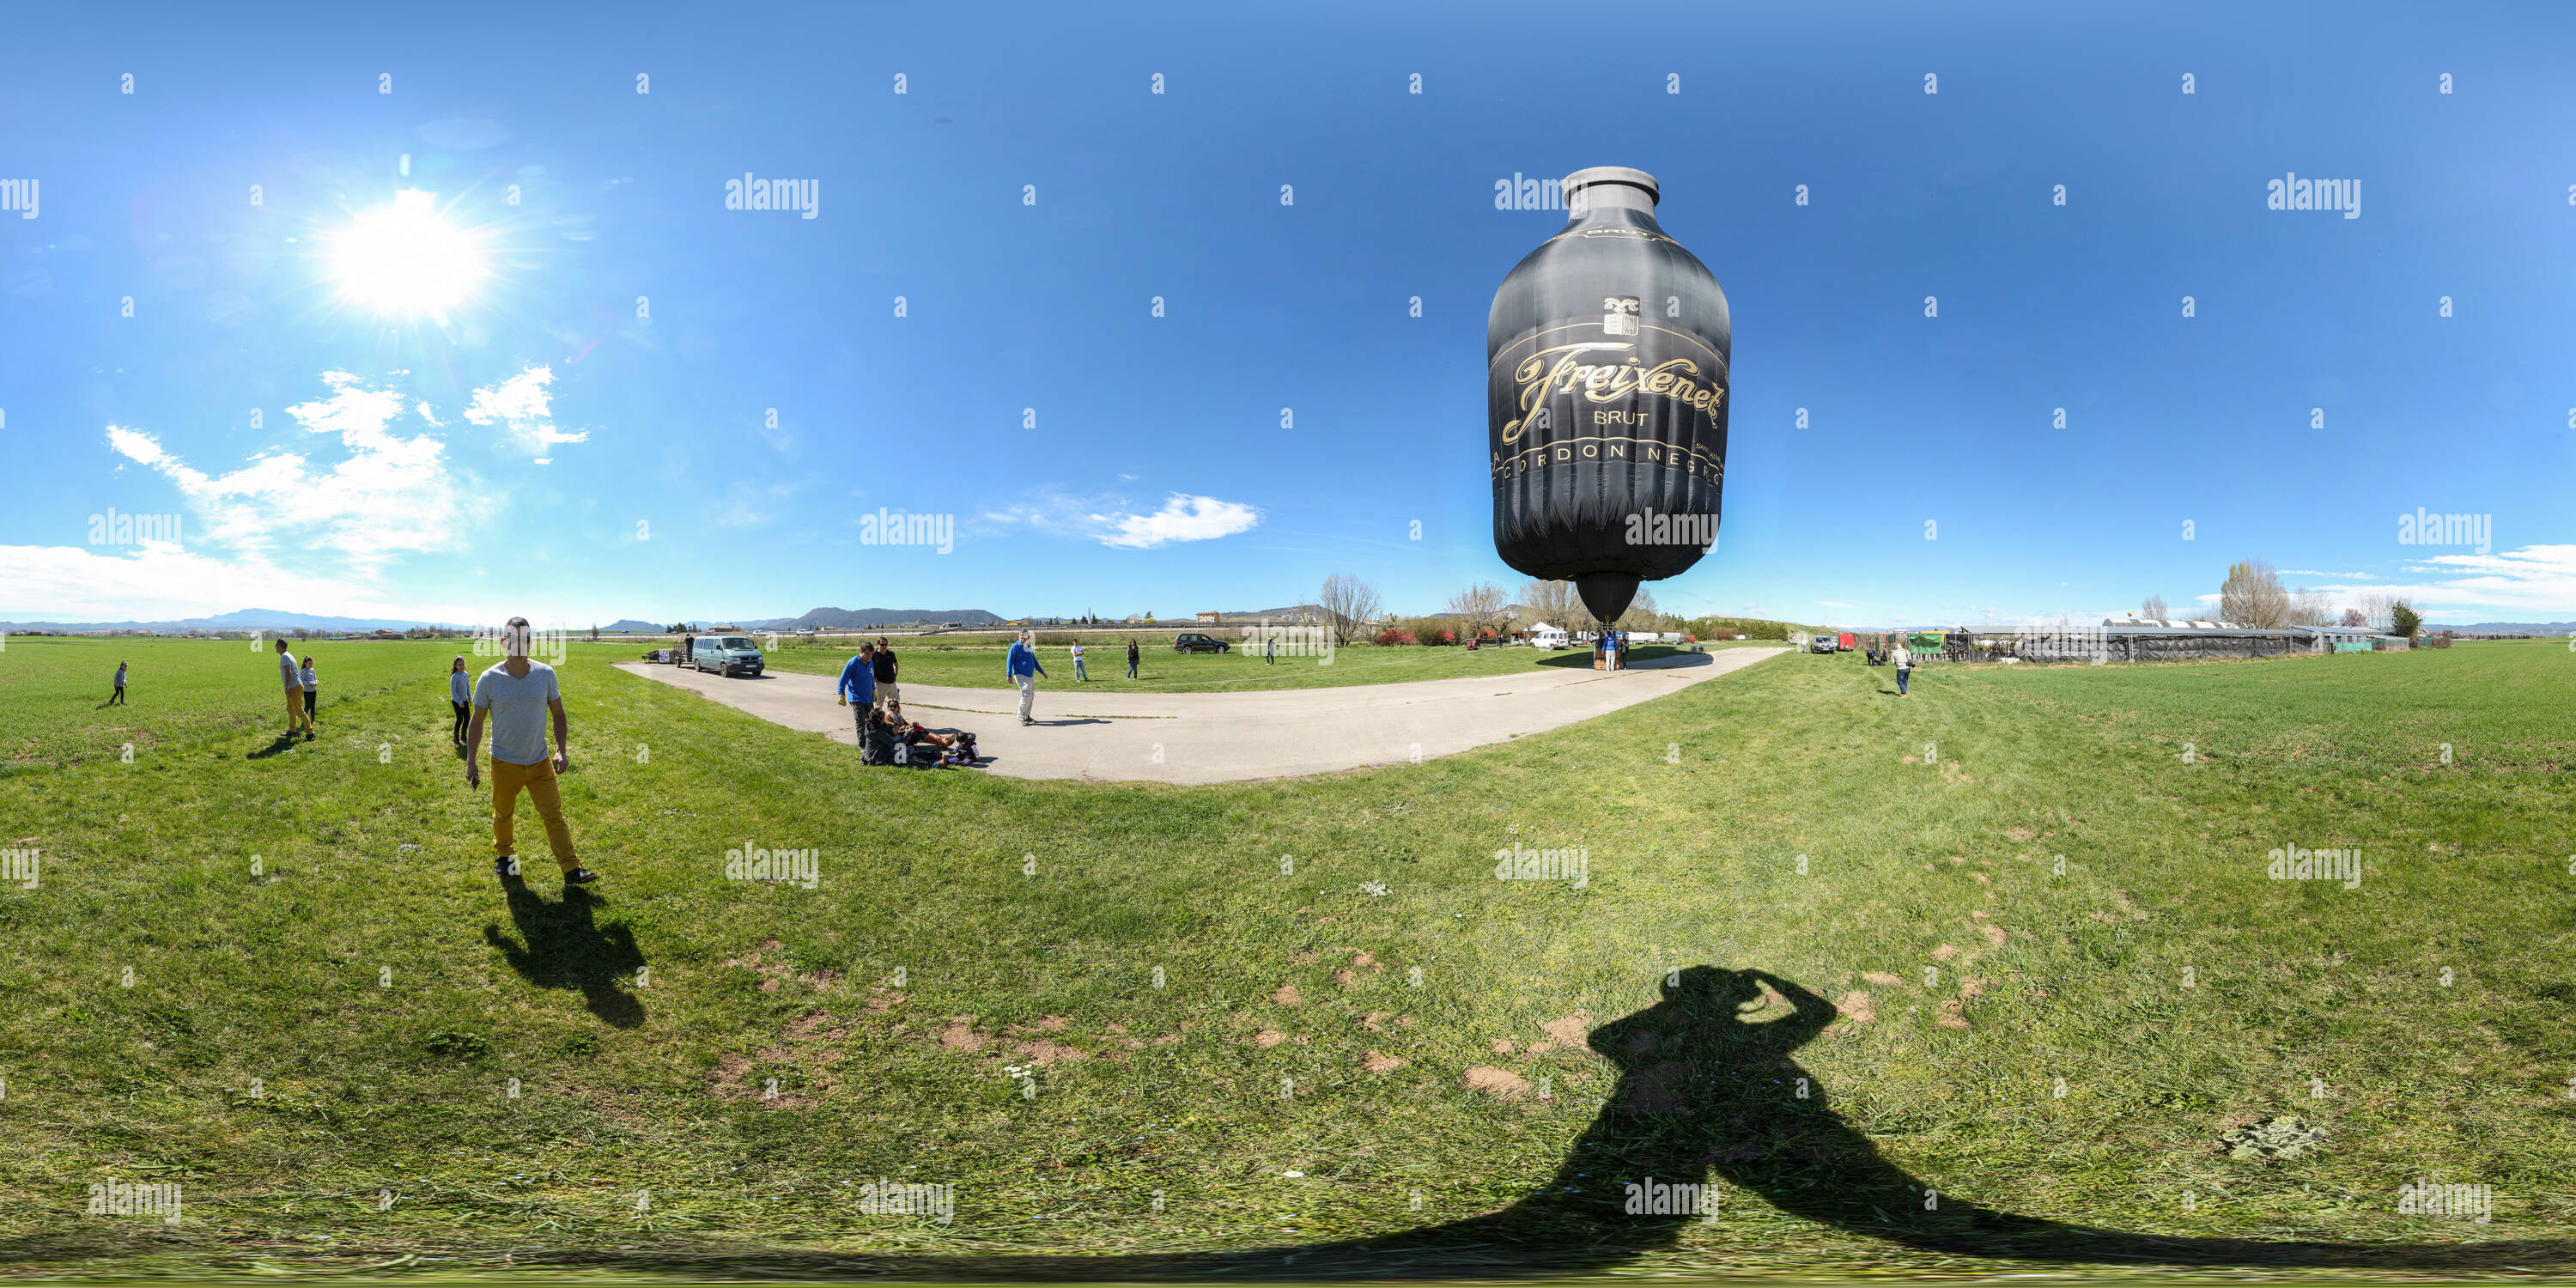 Visualizzazione panoramica a 360 gradi di 7 - Bottiglia palloncino - XXXII international mercat del ram balloon Trophy 2015 Vic